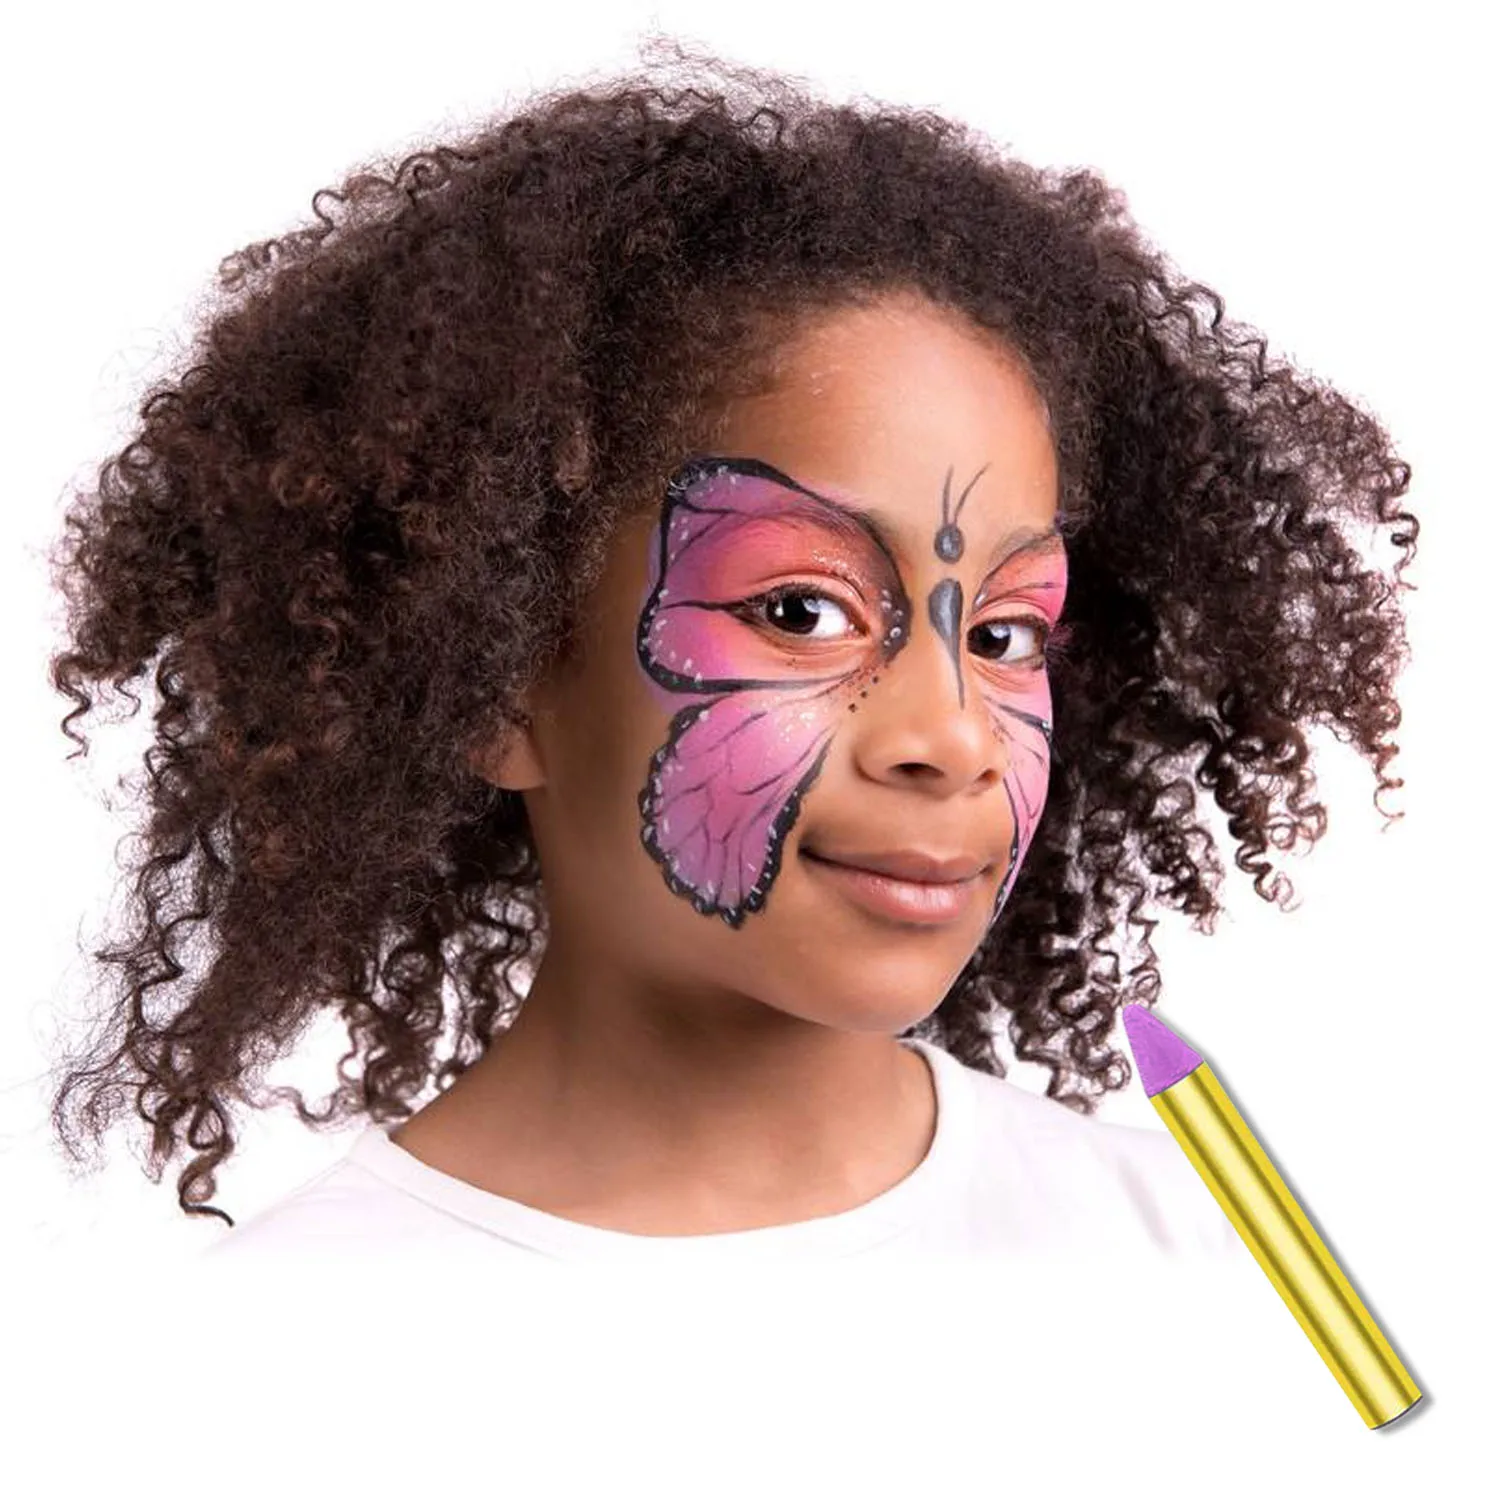 16 цветов Нетоксичная живопись для лица тела Мелки Комплект с спонж для очищения кожи для детей футбол для празднования Хеллоуина поставка